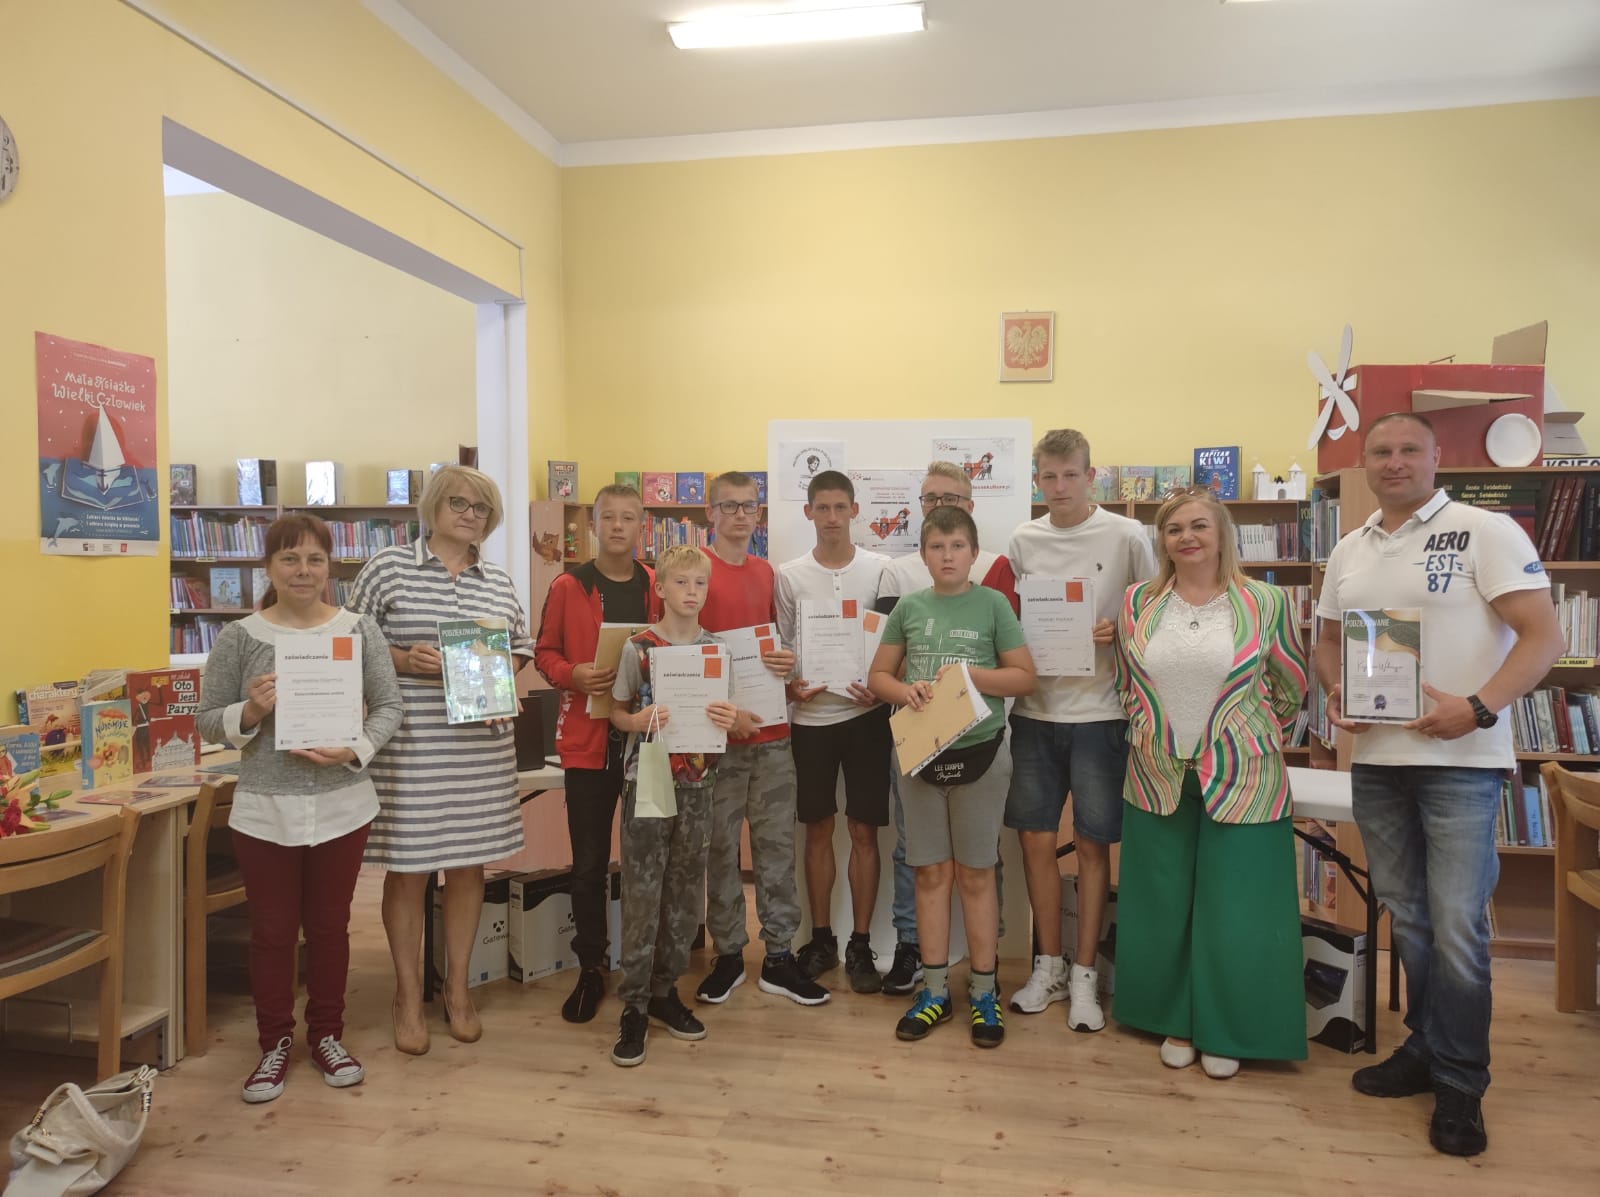 Zdjęcie grupowe osób zaangażowanych w realizację projektu "Sieć na kulturę w podregionie wałbrzyskim" realizowanego przez Miejską Bibliotekę Publiczną w Świebodzicach